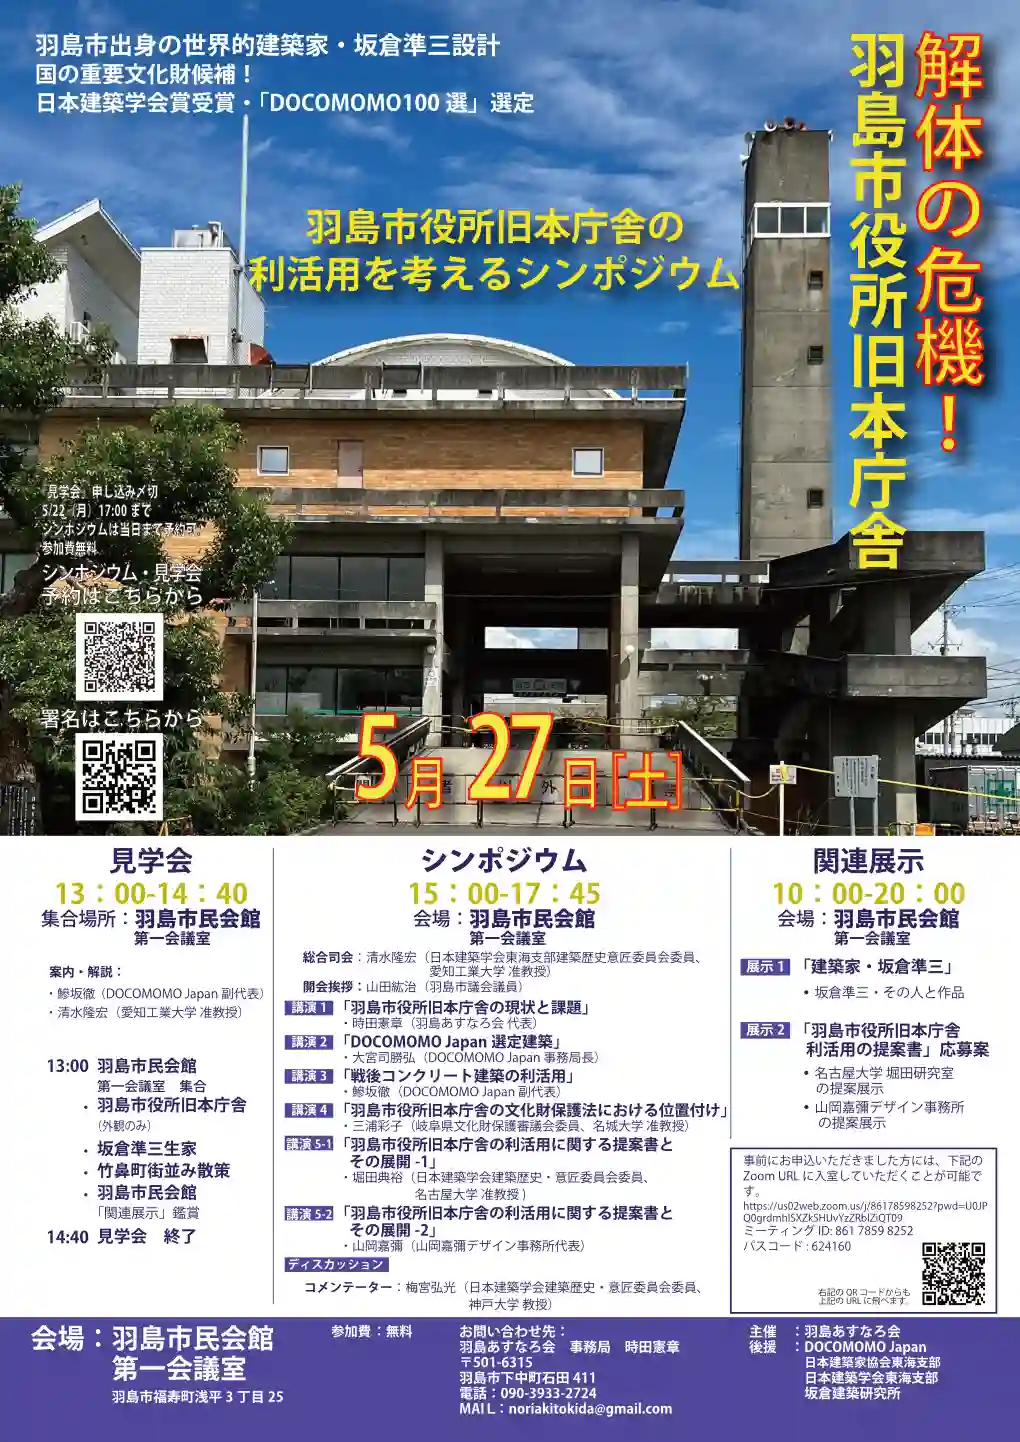 羽島市役所旧本庁舎の利活用を考えるシンポジウム-1